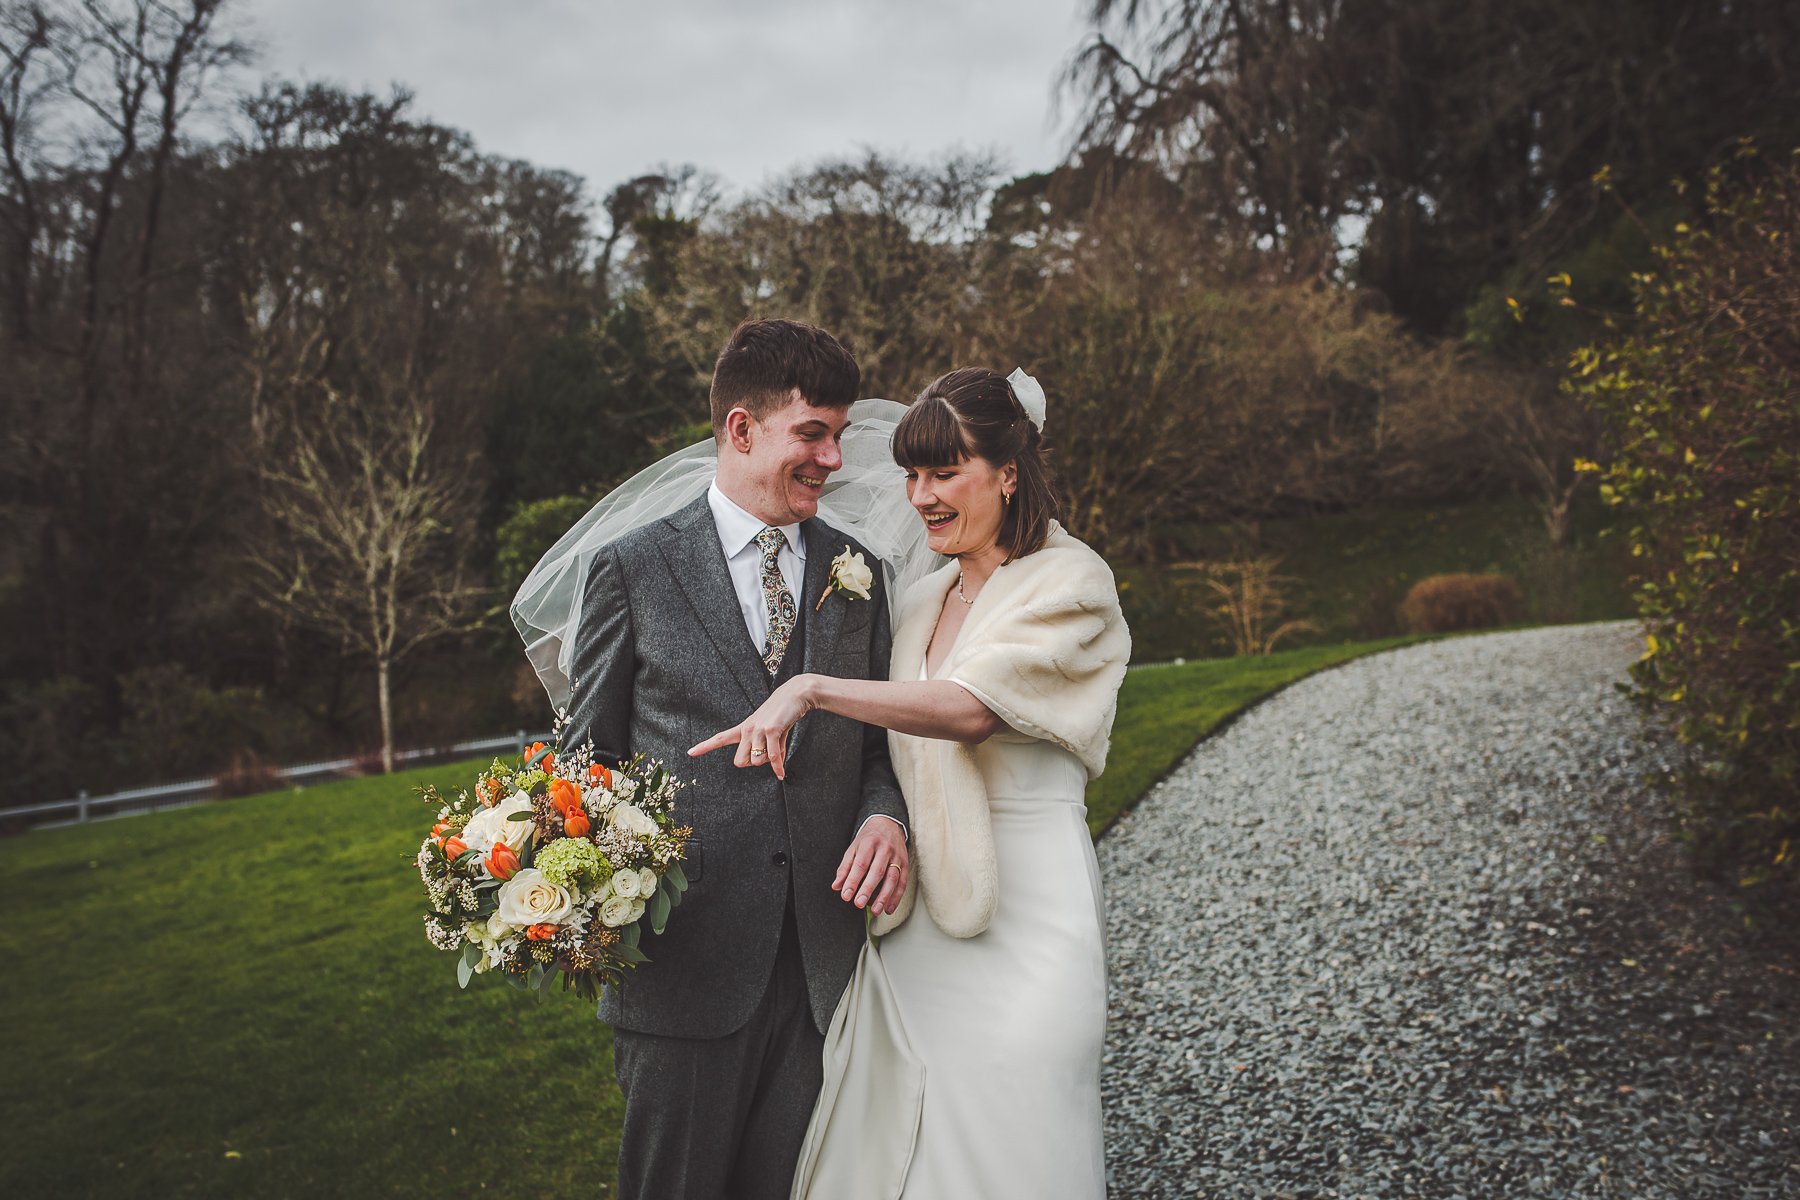 8 Hotel Endsleigh - Devon wedding photographer.jpg